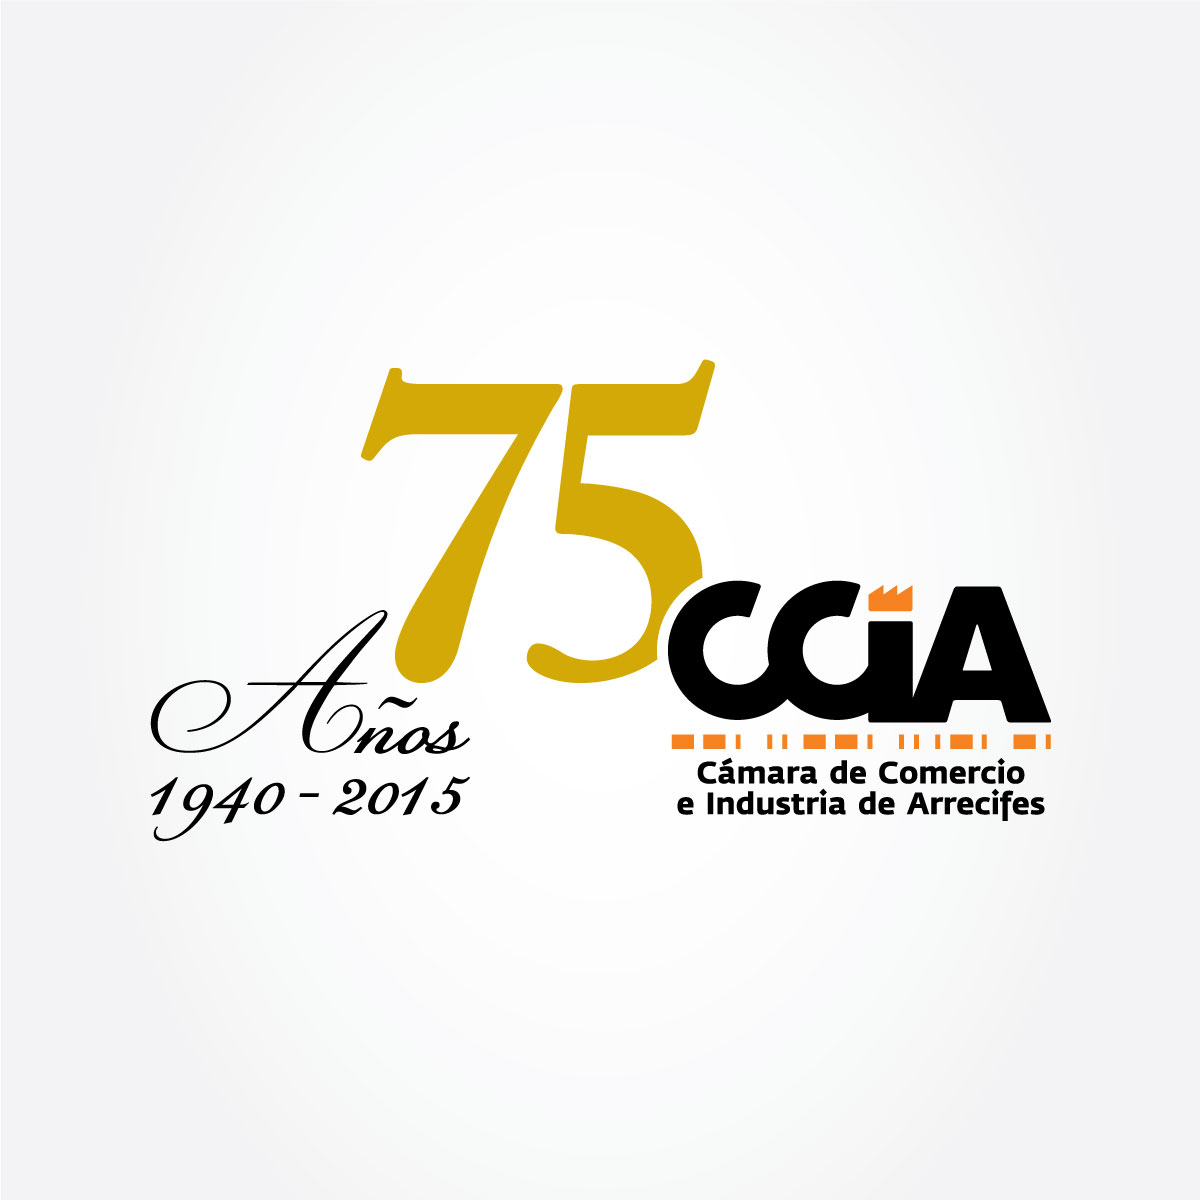 CCIA 75 años